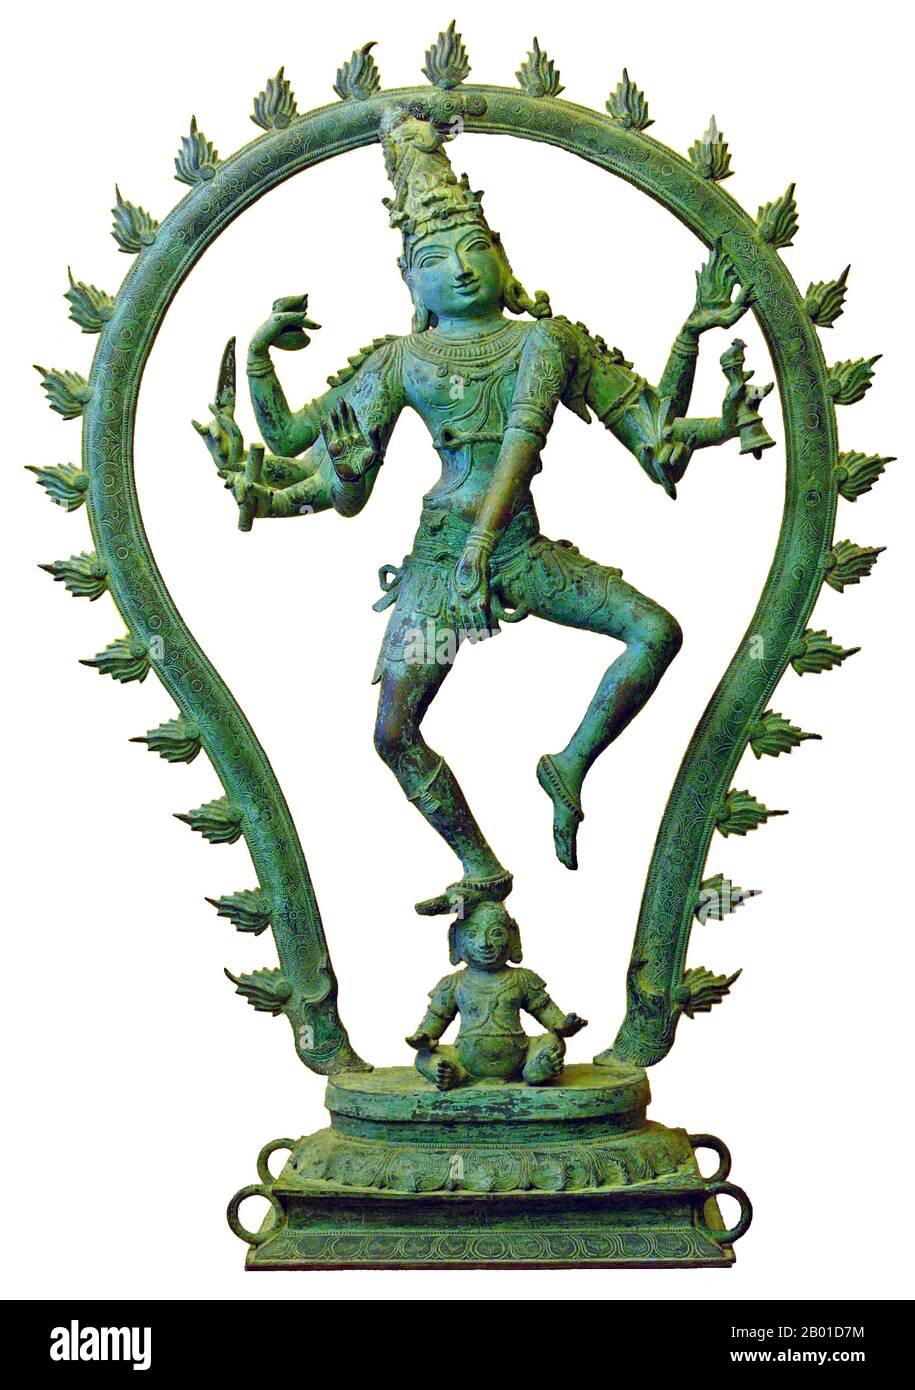 India: Shiva Nataraja o 'Dancing Shiva' da Pondicherry, c. 15th ° secolo CE. Bronzo ricoperto di patina verde da intemperie in aria salata, posto per un centinaio di anni in un tempio vicino al mare. Foto di Hannes Grobe (CC BY-SA 3,0 licenza). Nataraja o Nataraj ('il Signore (o Re) della Danza'; Tamil: Kooththan) è una rappresentazione tamil del dio indù Shiva come ballerina cosmica Koothan che esegue la sua danza divina per distruggere un universo stanco e fare preparativi per il dio Brahma per iniziare il processo di creazione. Foto Stock